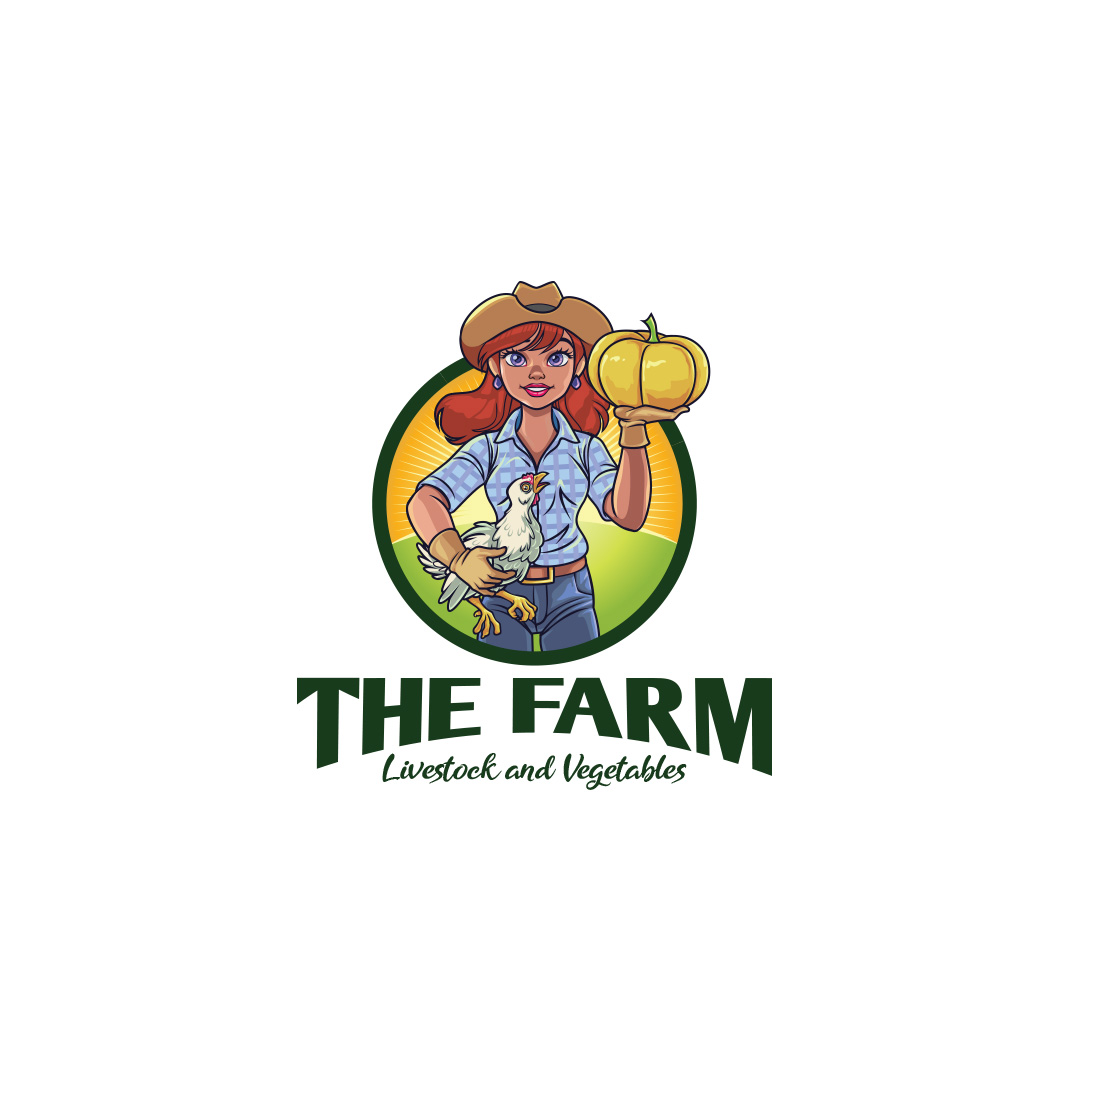 Girl Farmer Mascot Logo Design cover image.